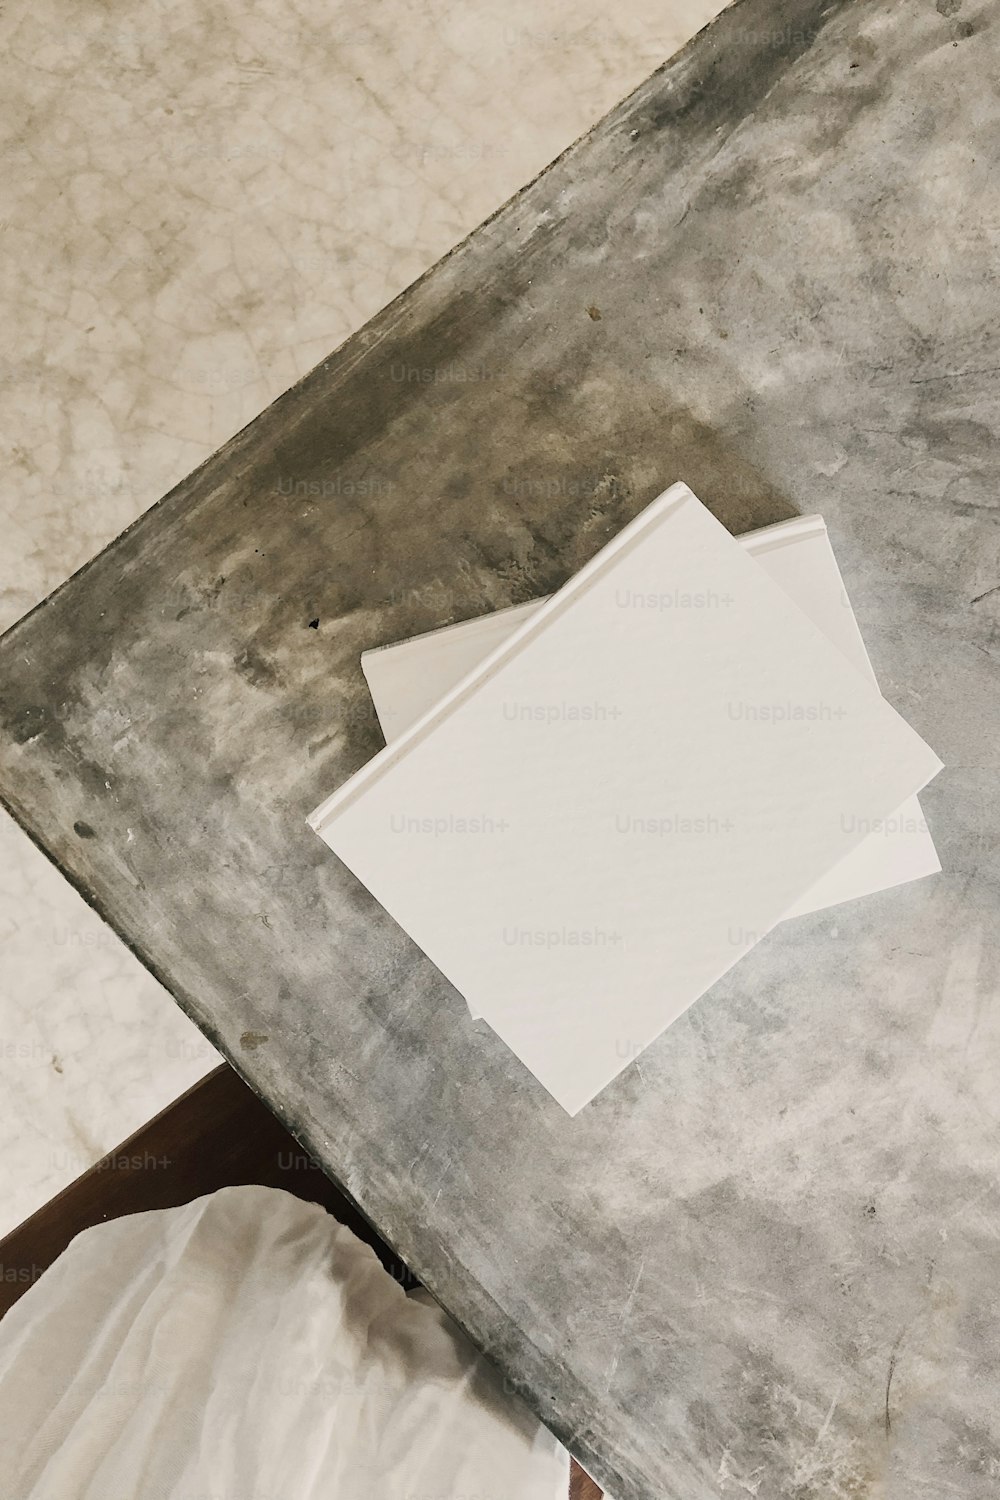 테이블 위에 놓여 있는 하얀 종이 한 장